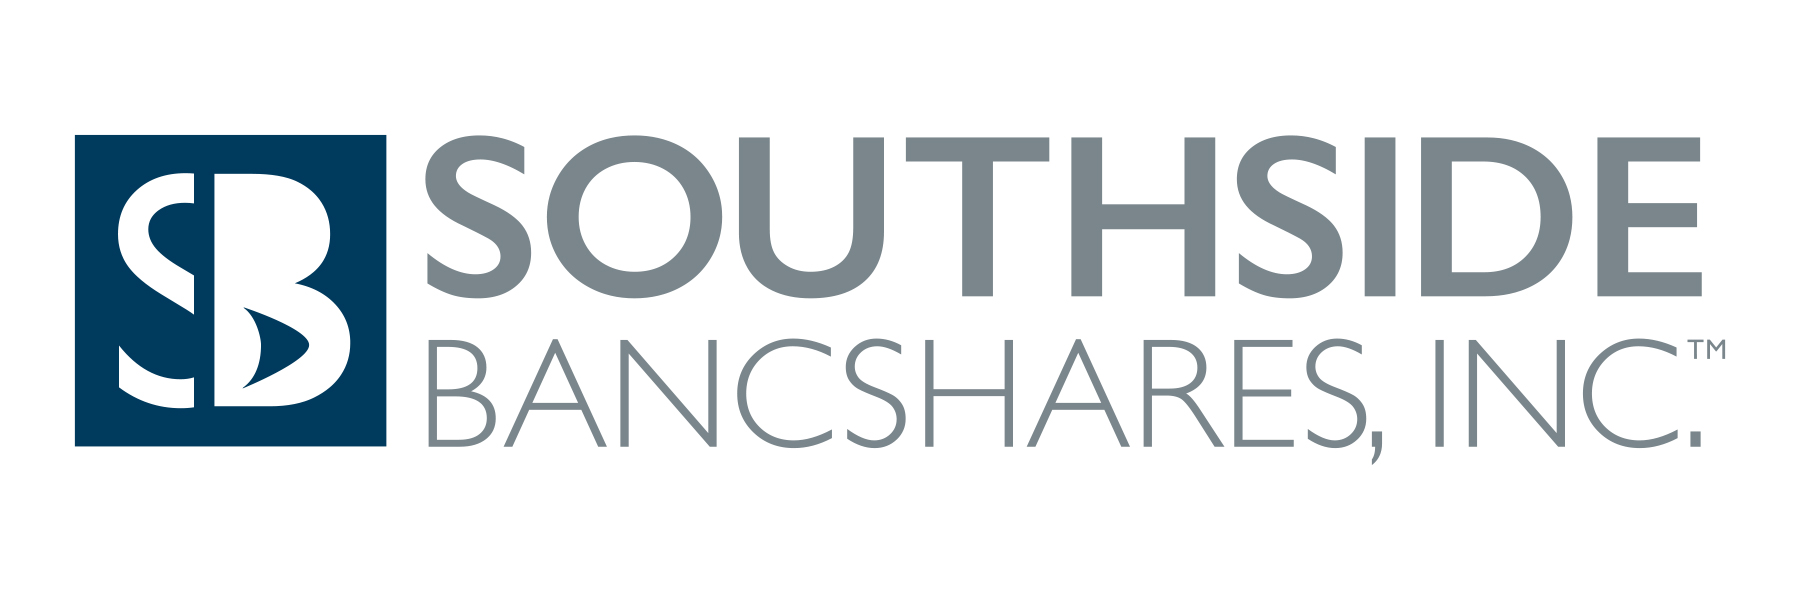 Southside Bancshares, Inc. Declares Cash Dividend